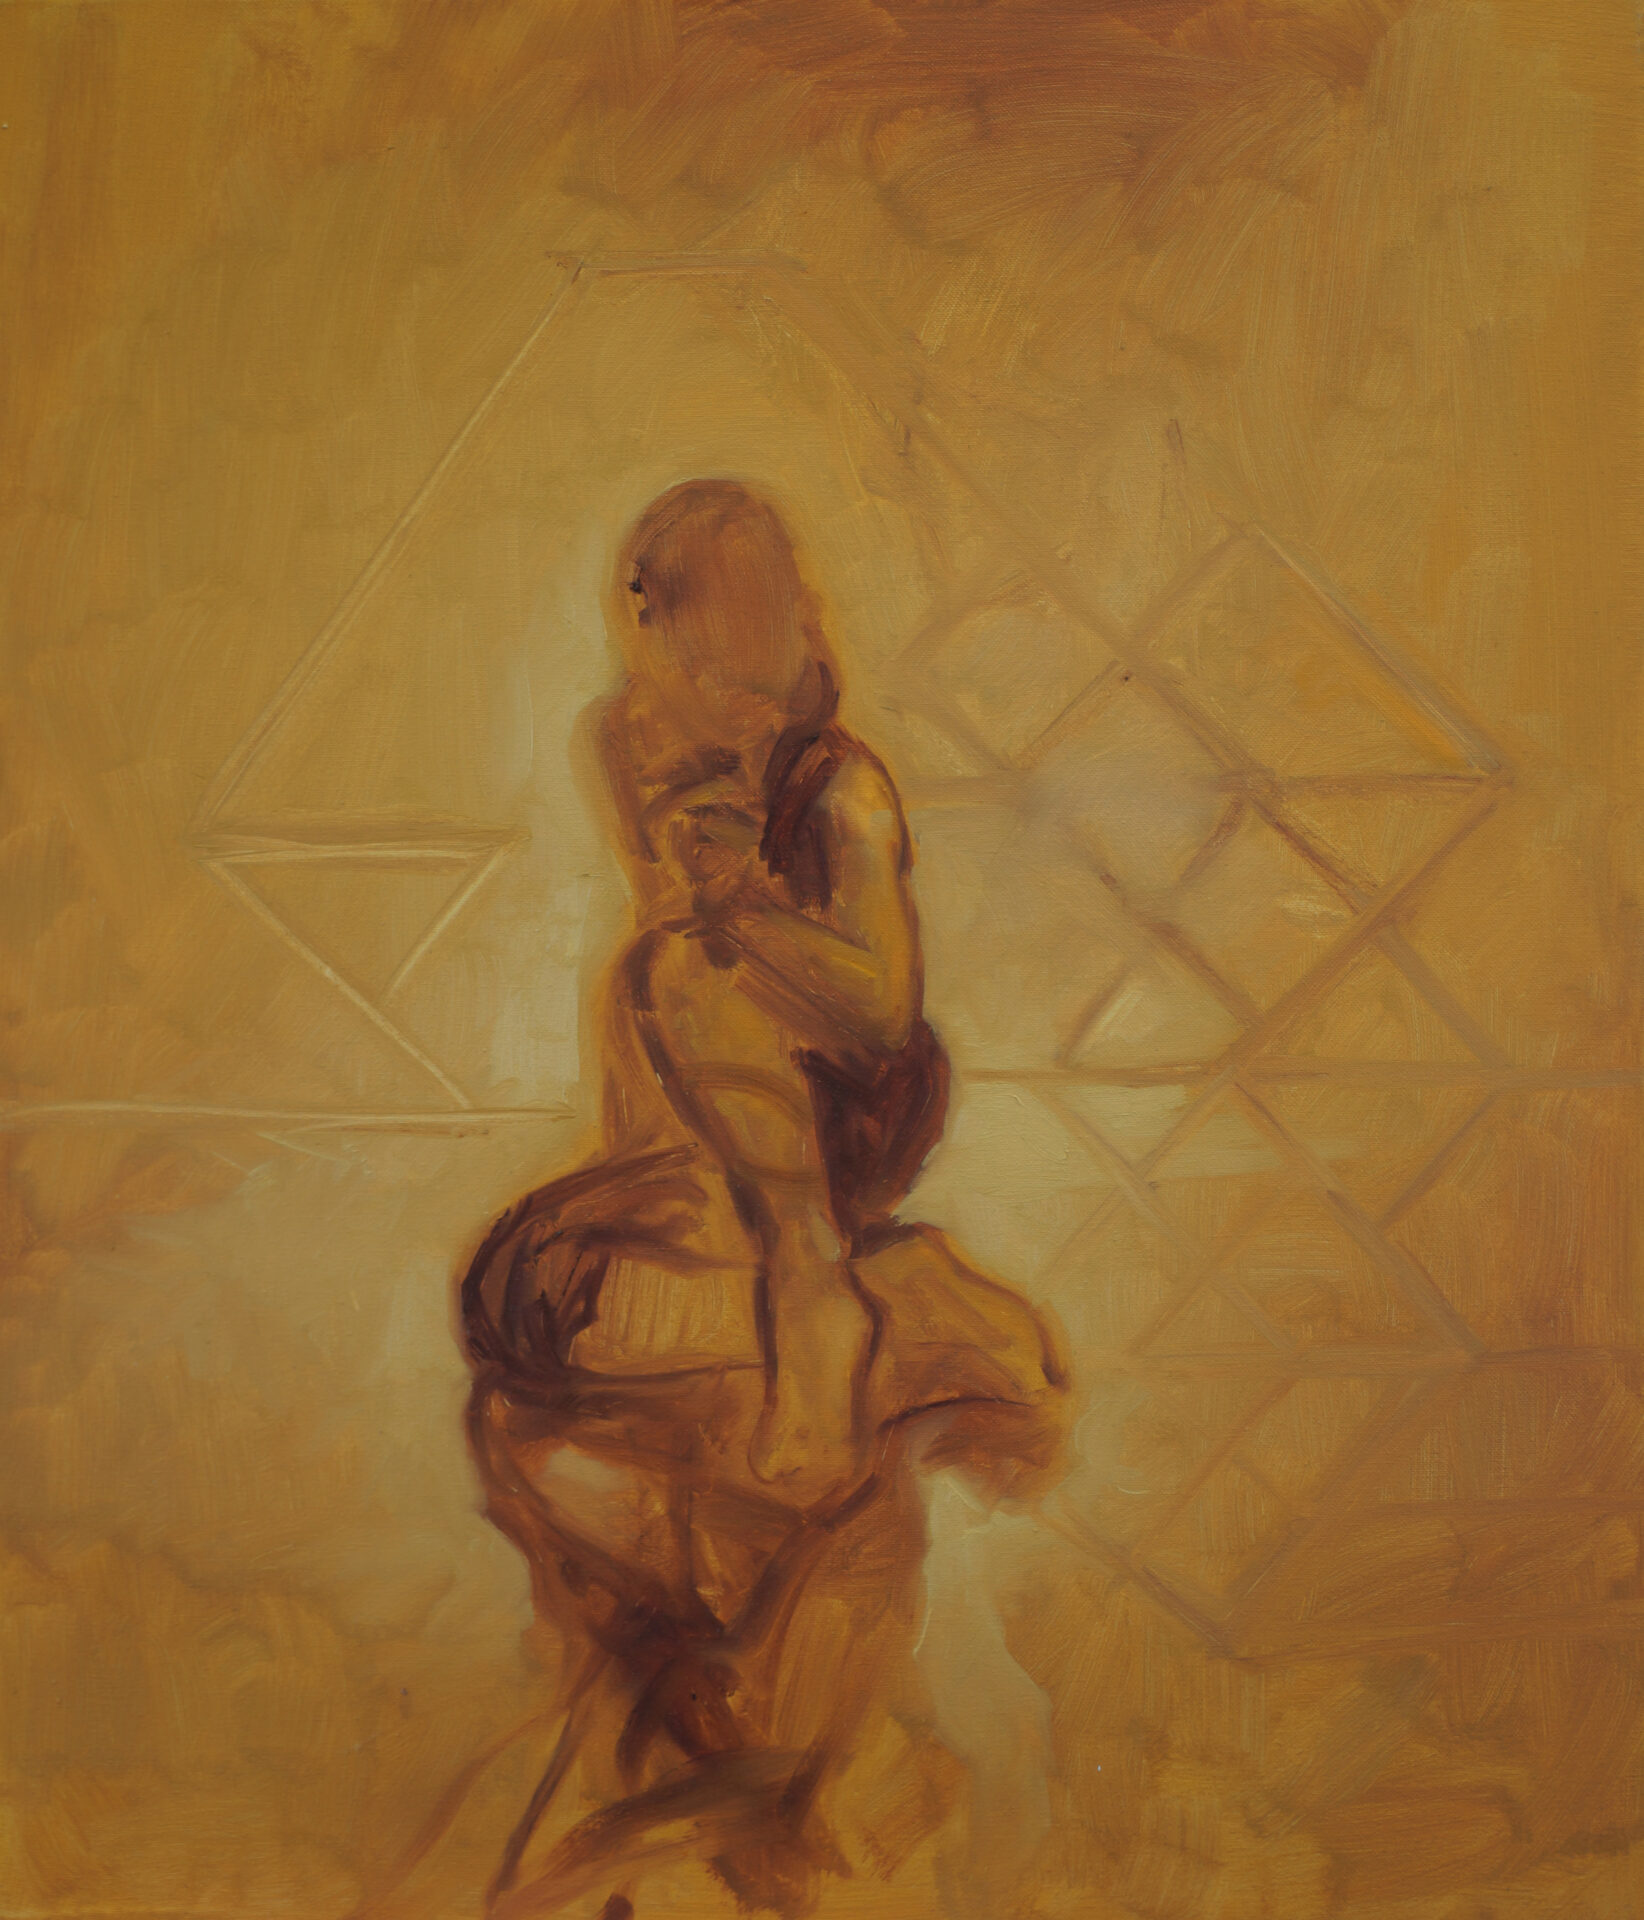 Daniel Beer, SCENIC 20-7, 60 x 50 cm, Öl auf Leinwand, 2020